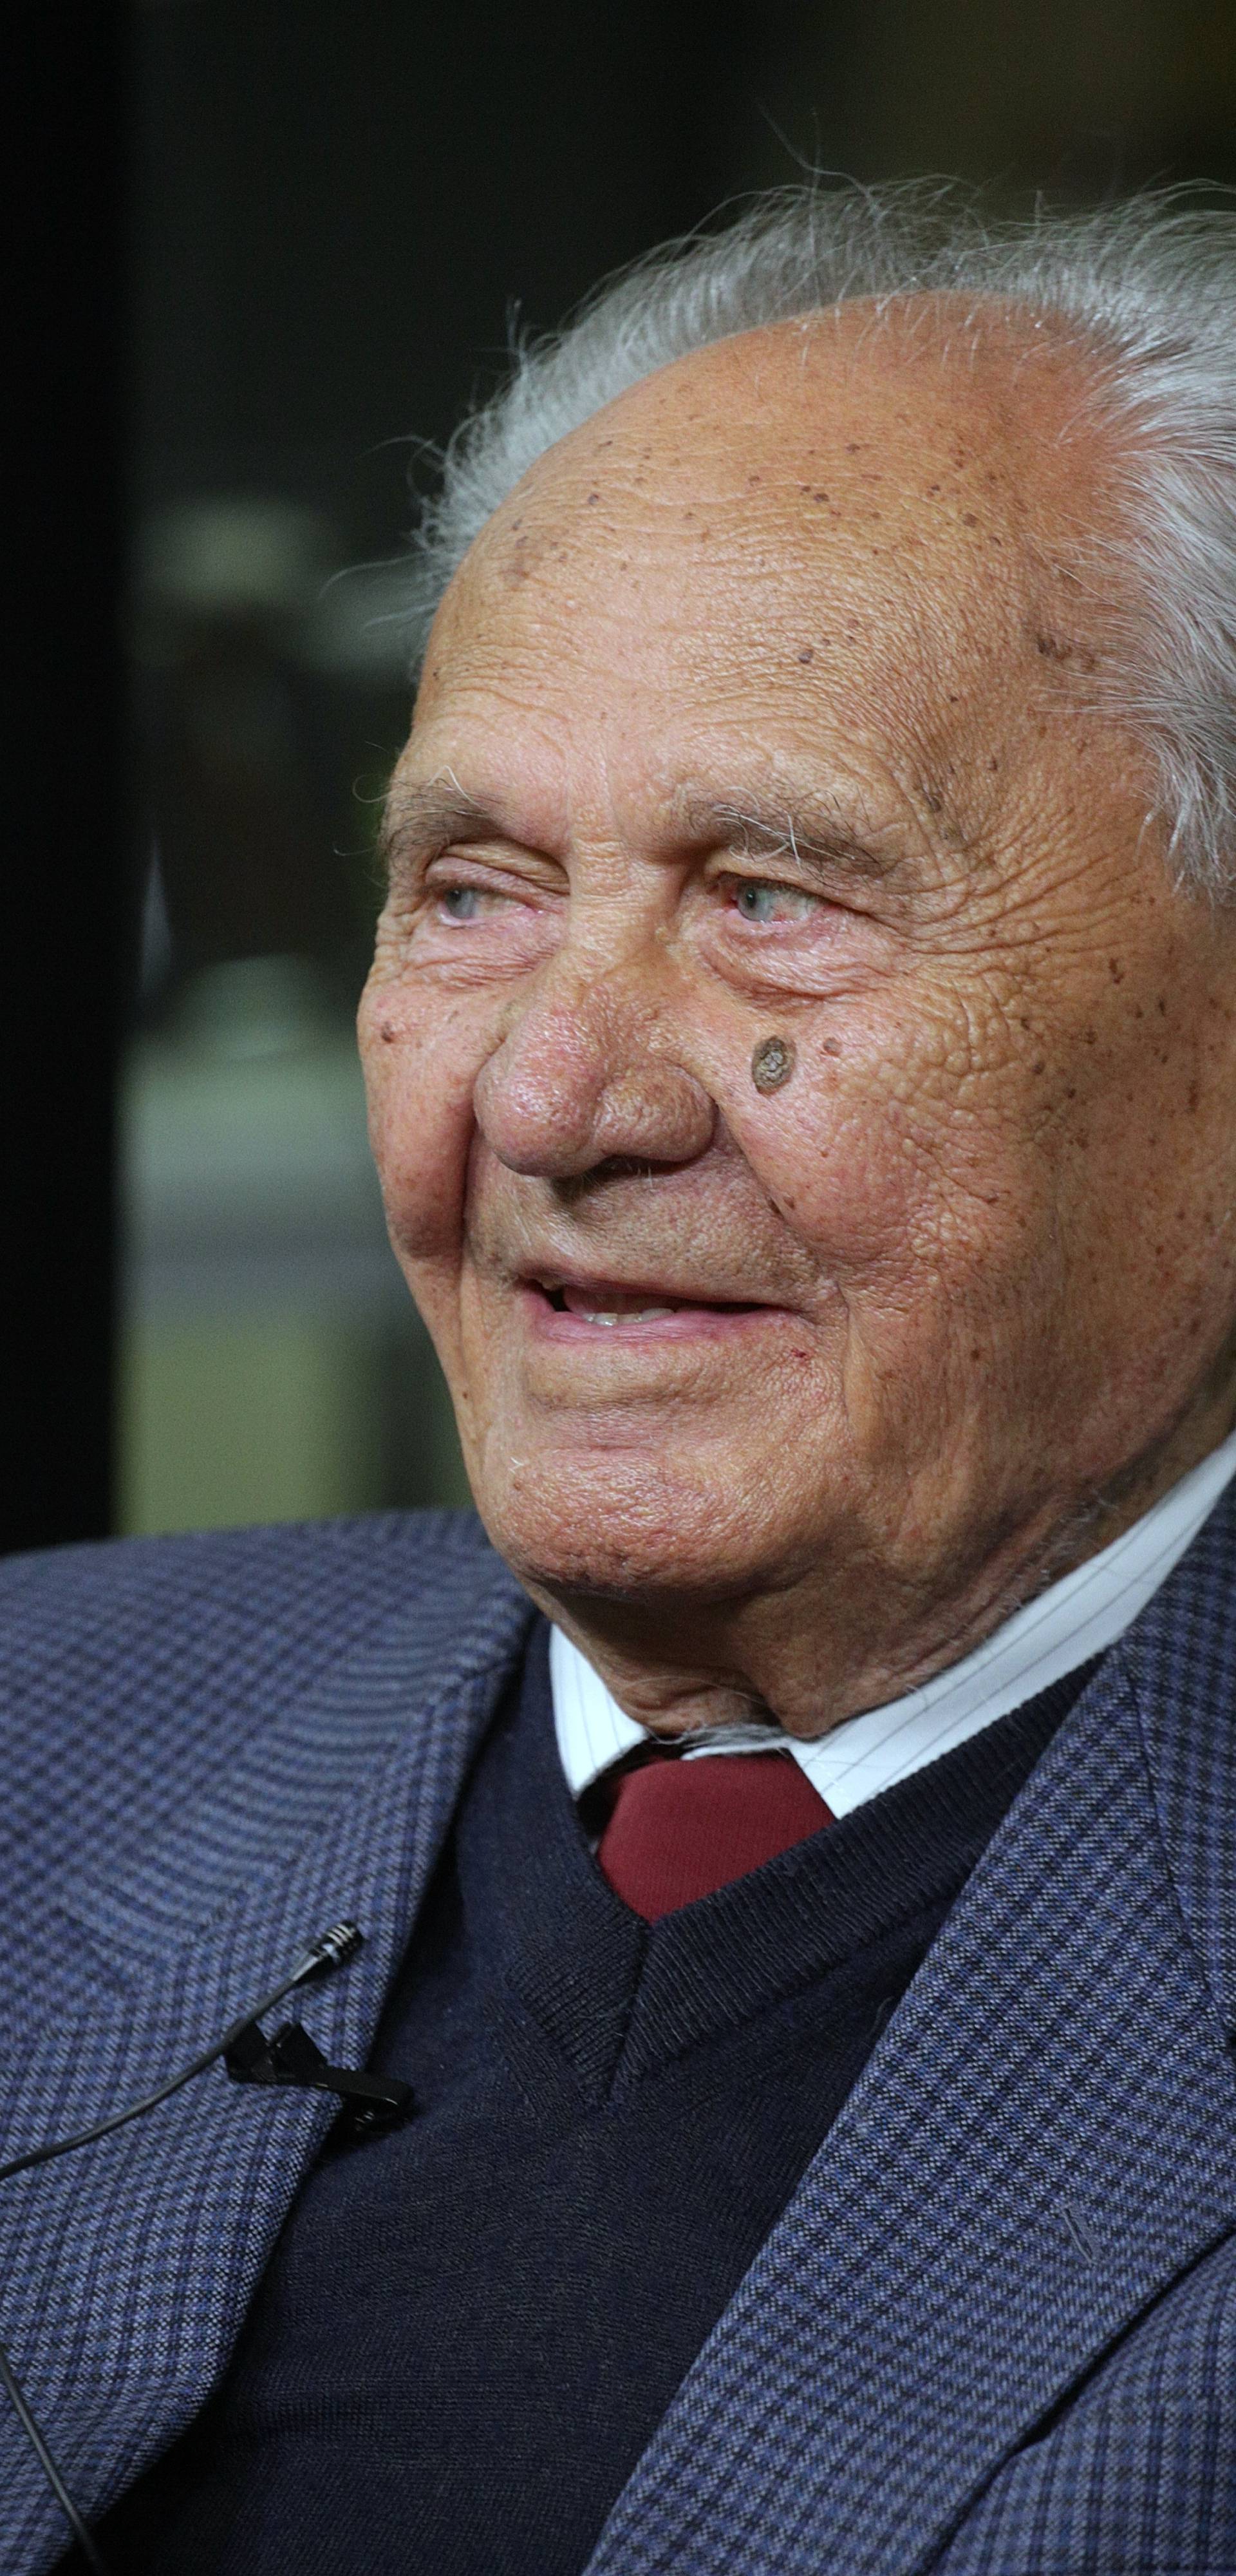 Prošla je godina dana otkako je proslavio 100-ti rođendan na koji se Zagreb tresao kao nikad